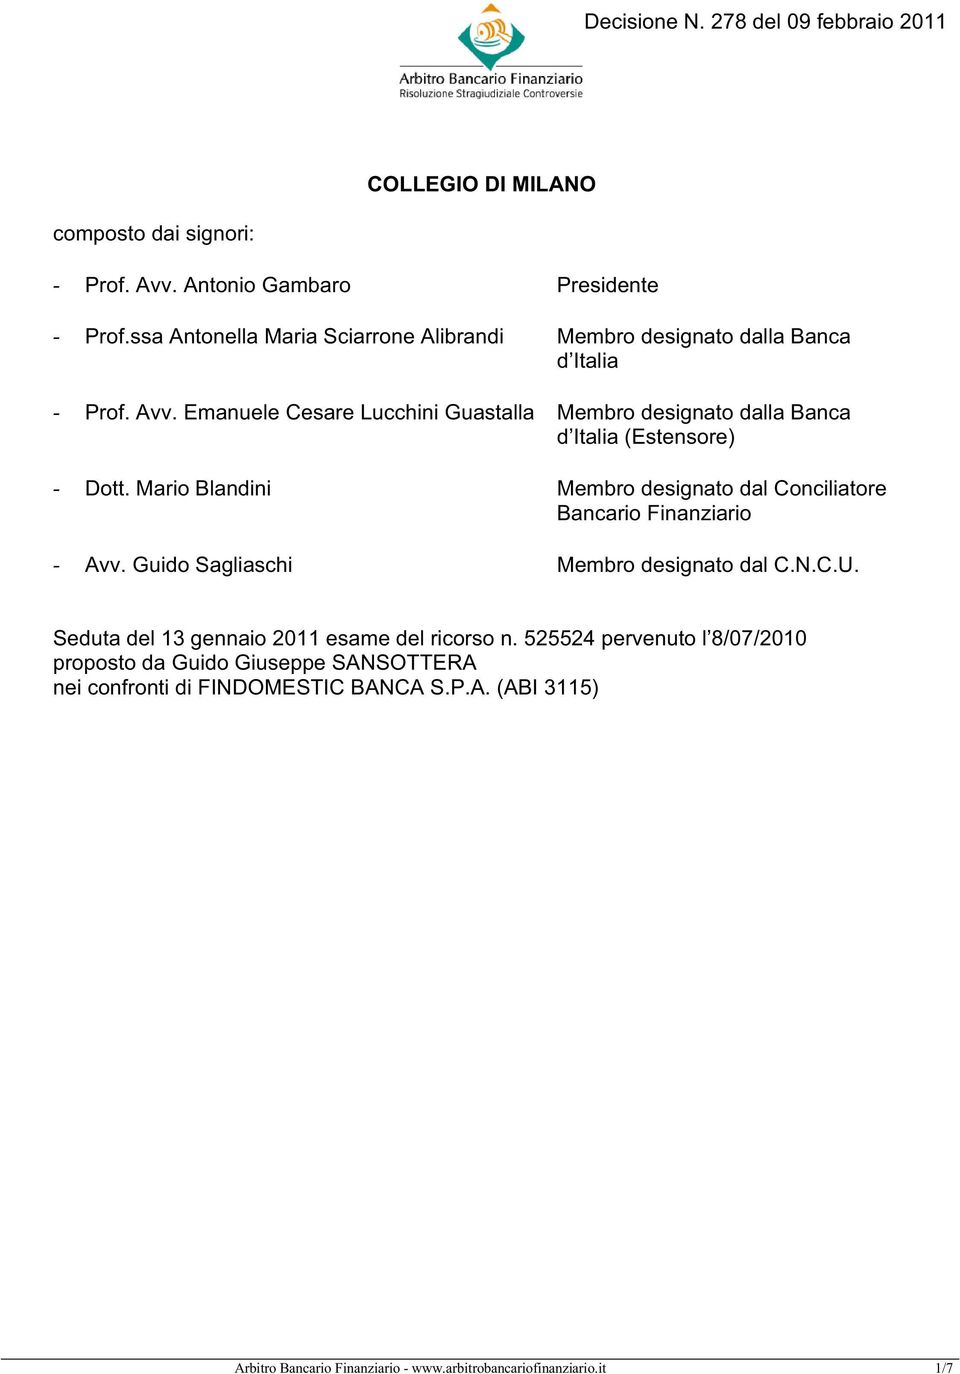 Emanuele Cesare Lucchini Guastalla Membro designato dalla Banca d Italia (Estensore) - Dott.